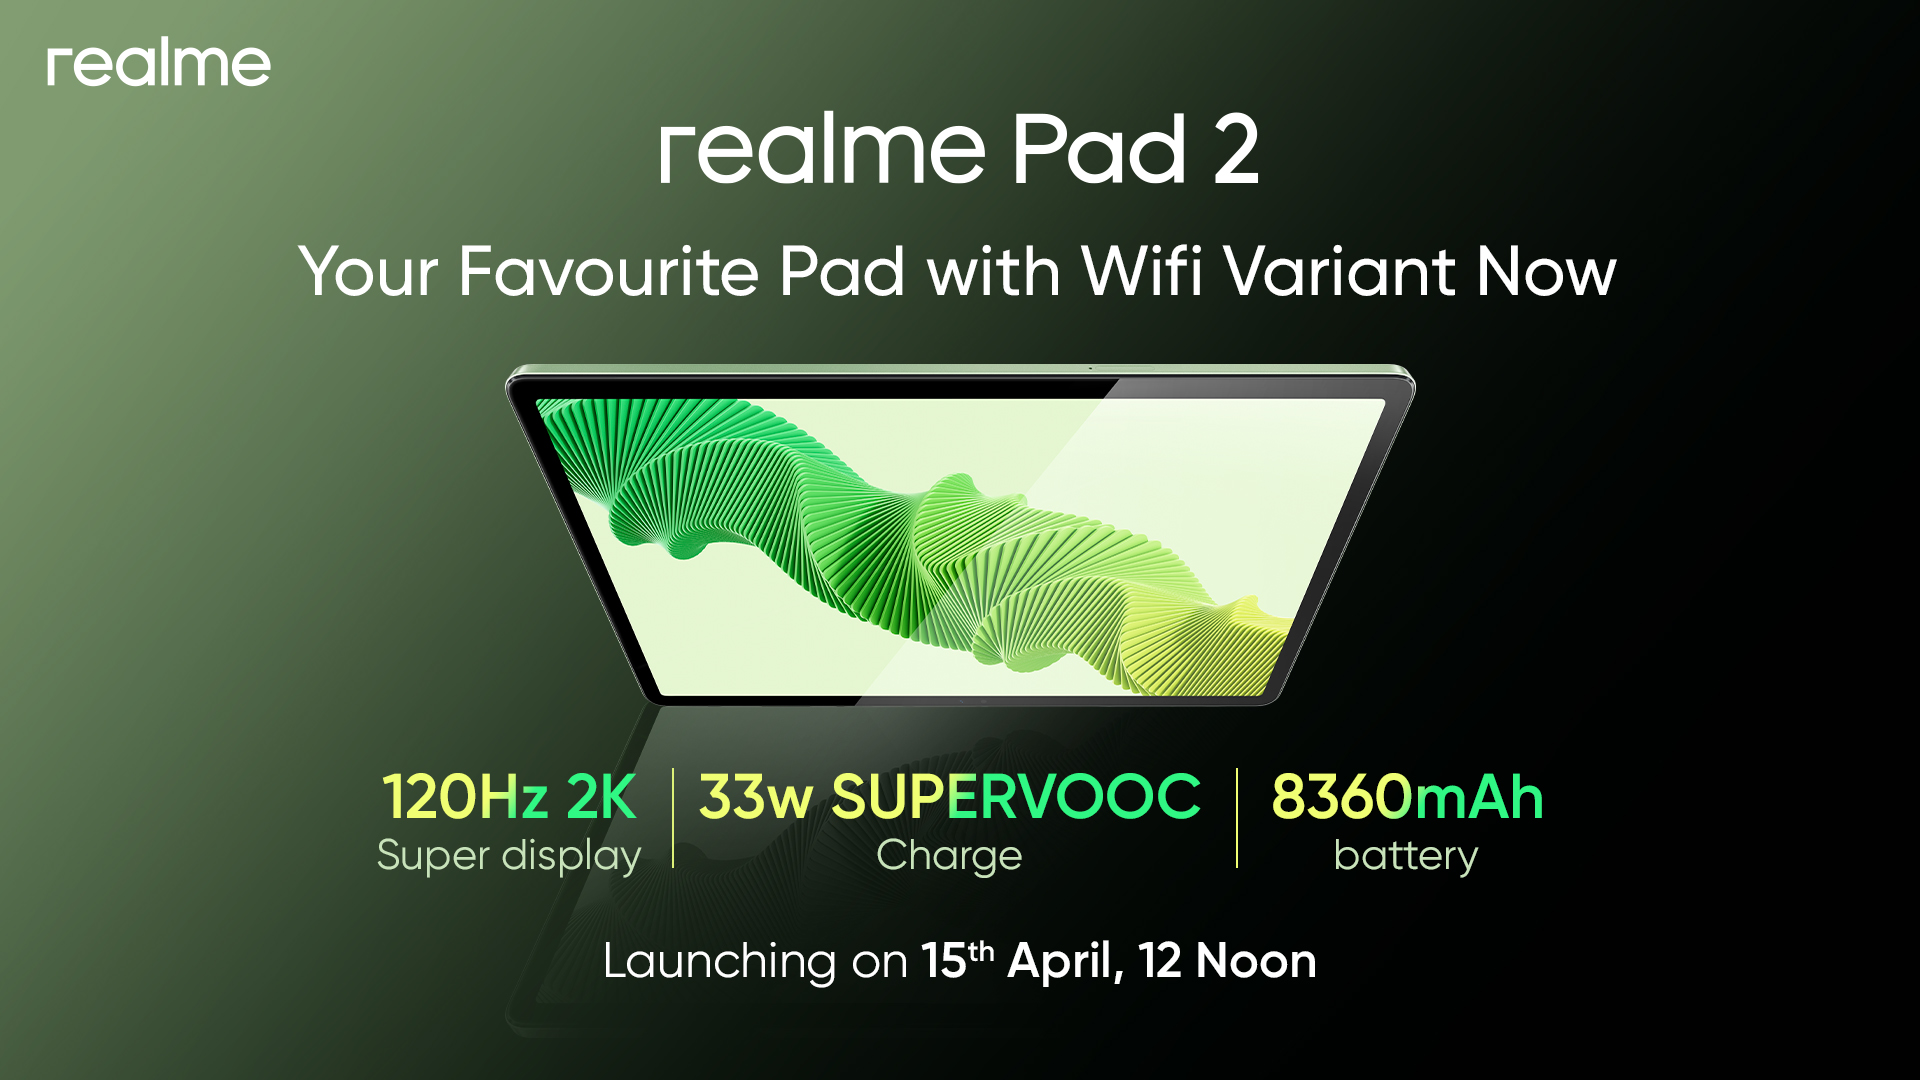 Det er officielt: Den Wi-Fi-aktiverede Realme Pad 2 får premiere den 15. april.